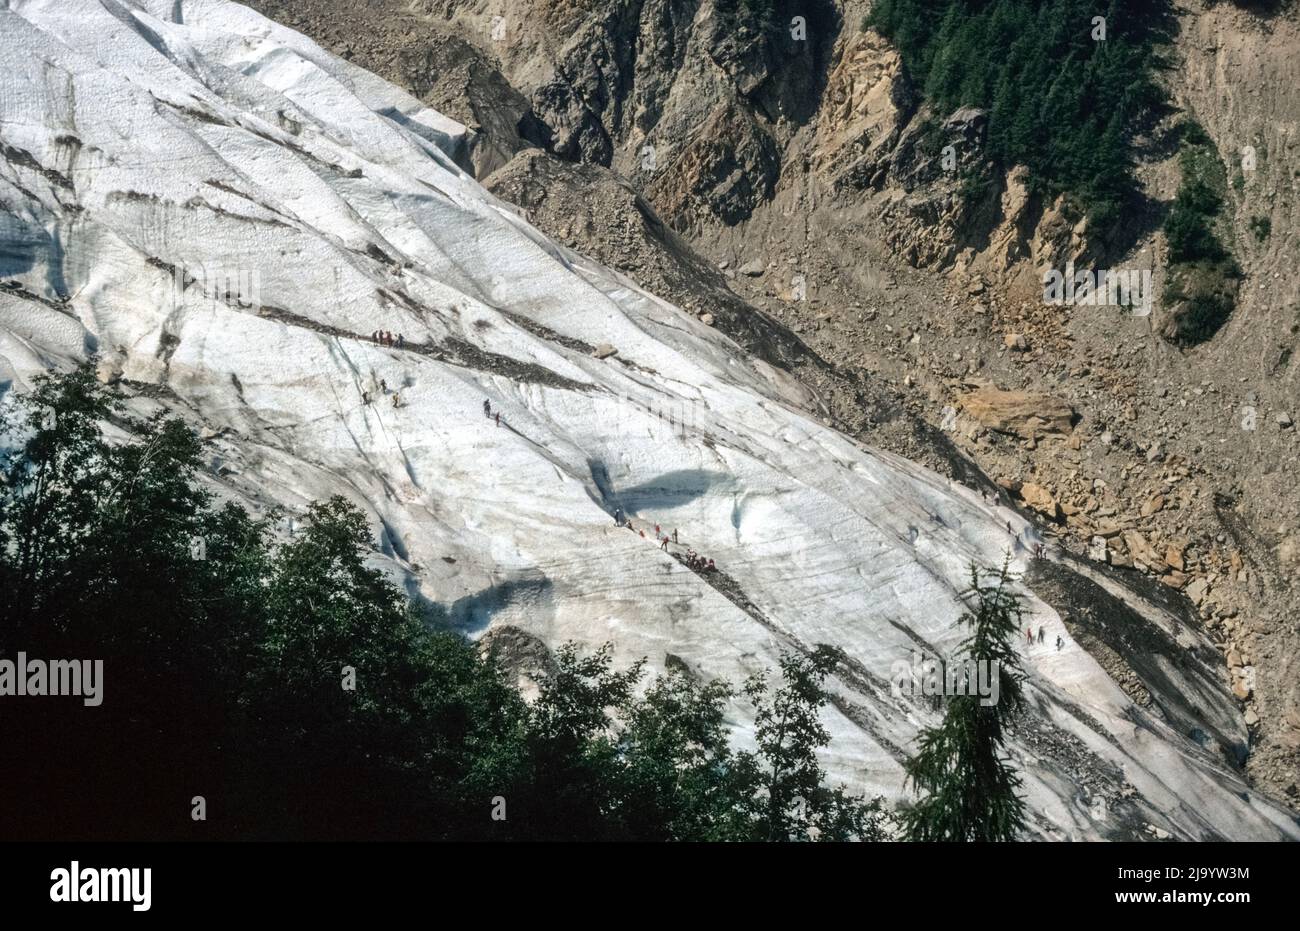 Le glacier des Bossons vu de la Buvette du Cerro à 1358 M. Il y a beaucoup de gens sur la langue du glacier. Chamonix Mont blanc, France, 1990 Banque D'Images